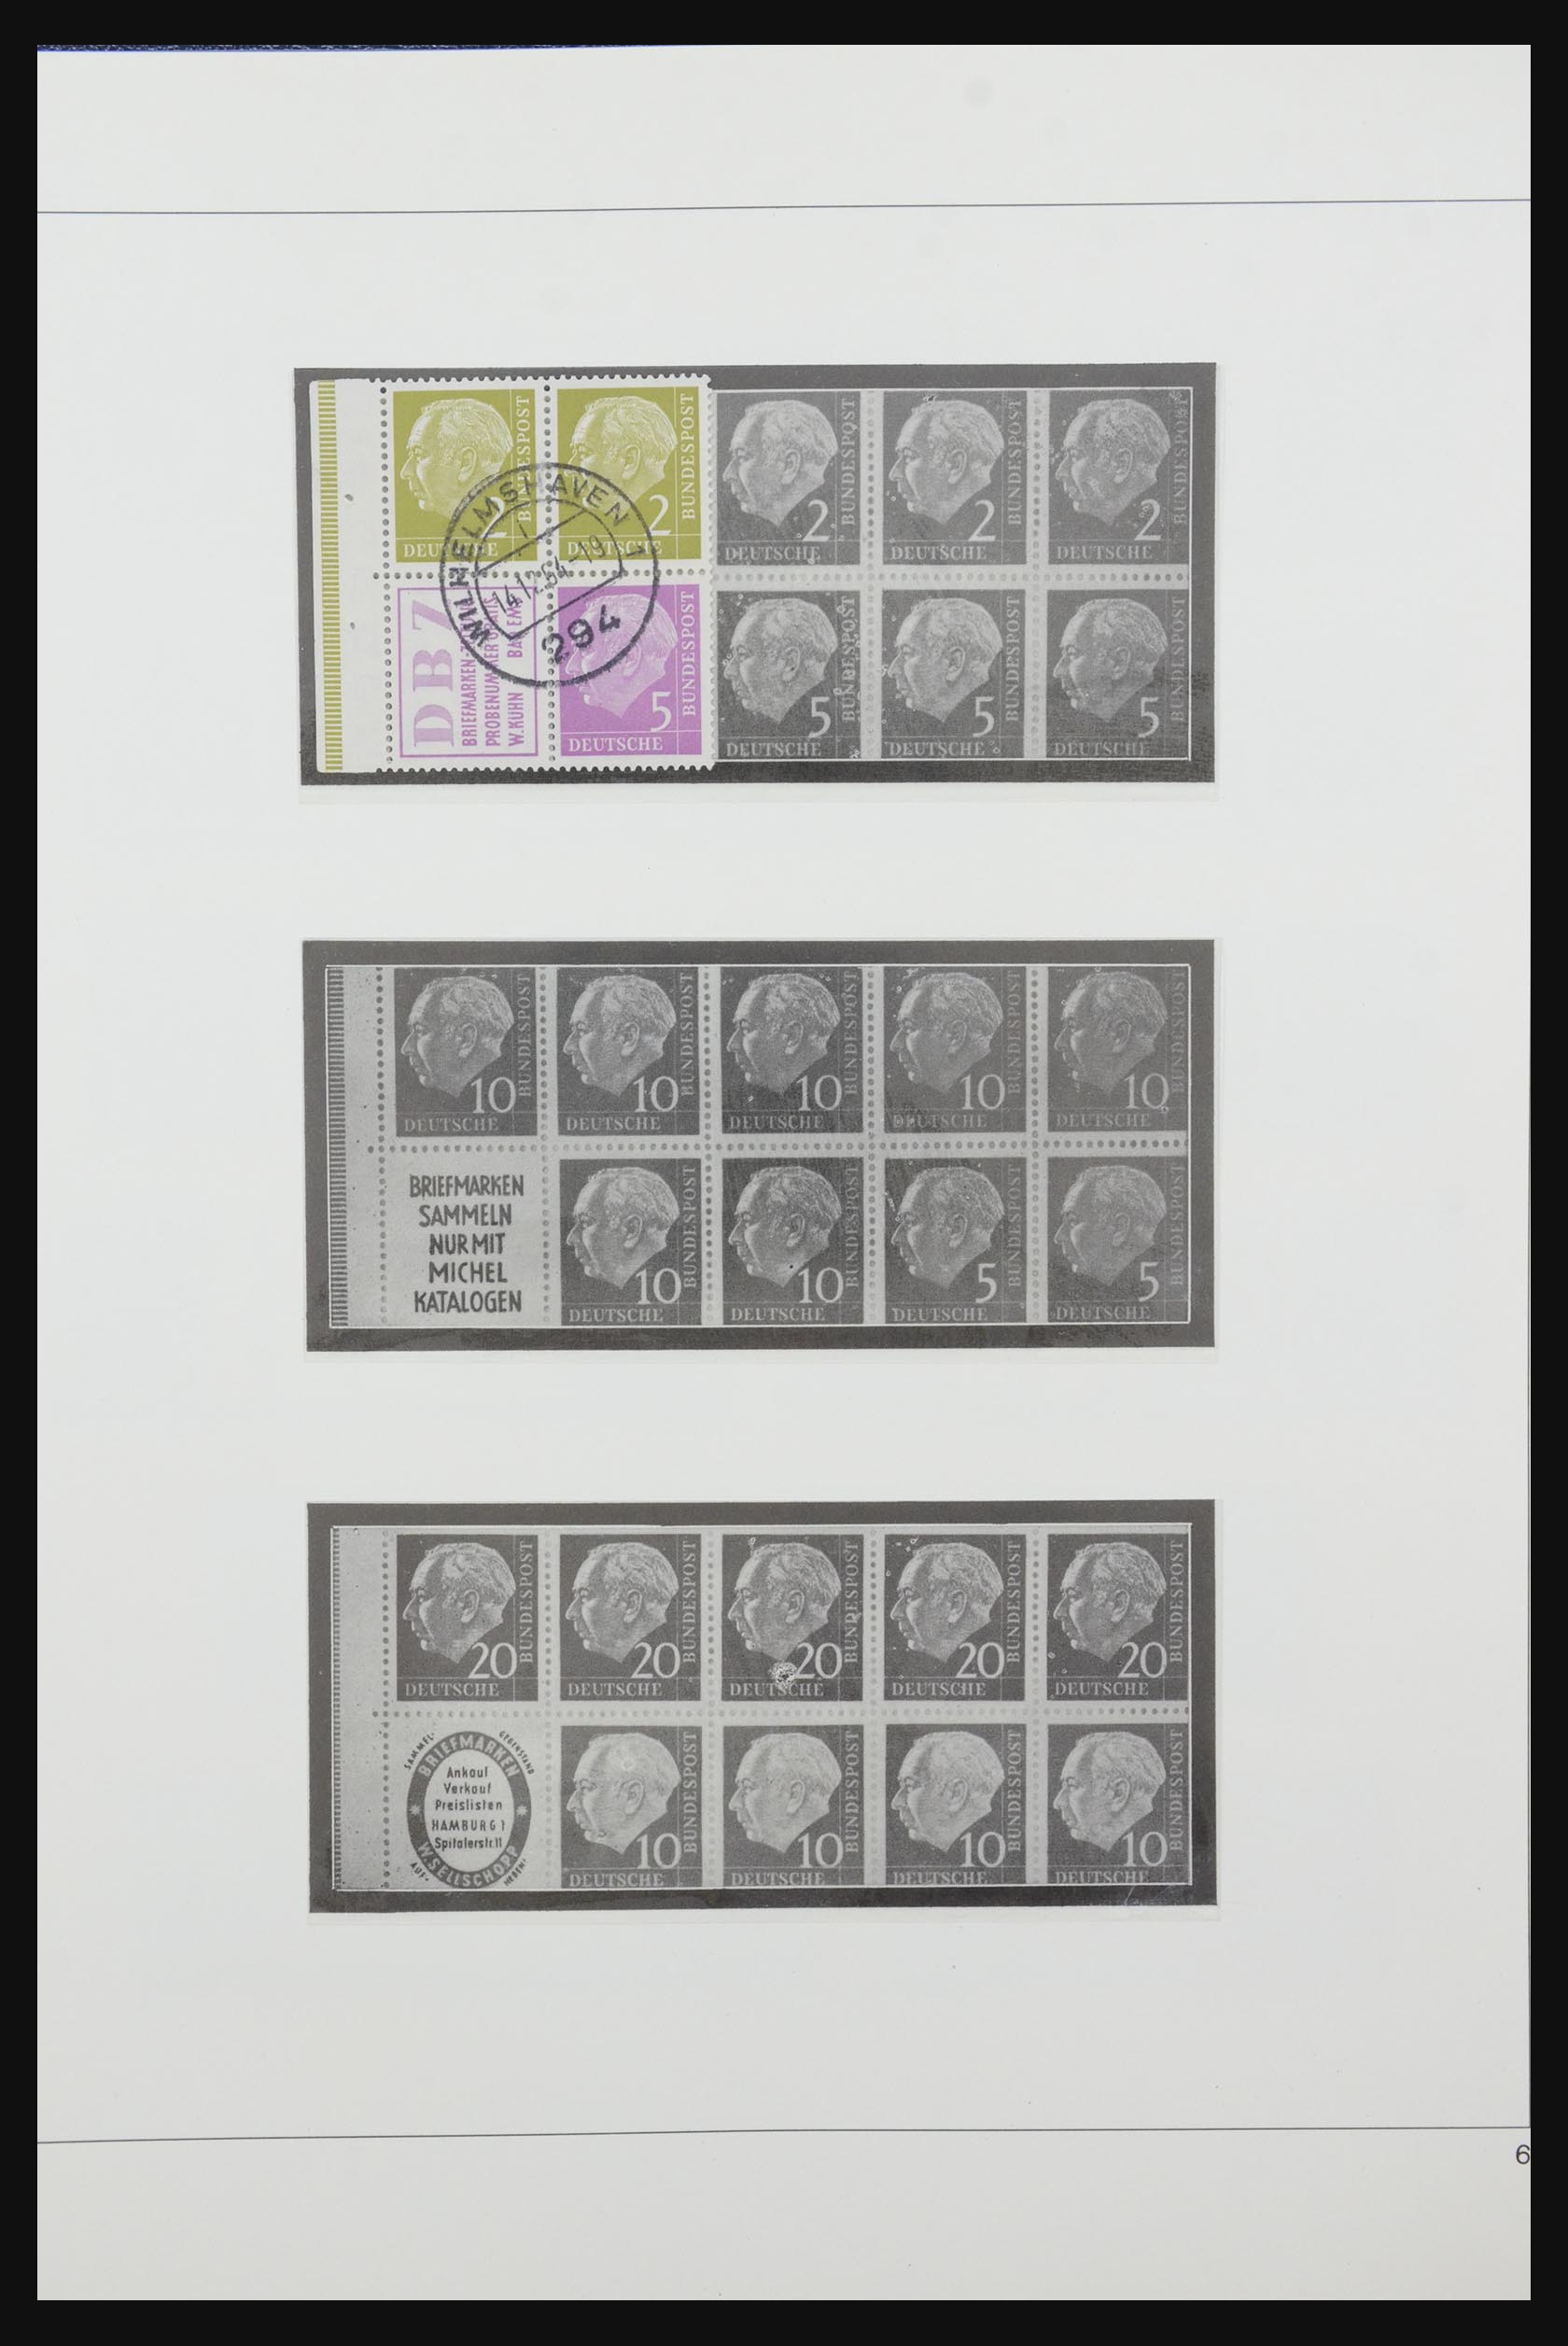 31842 007 - 31842 Bundespost combinaties 1951-2003.